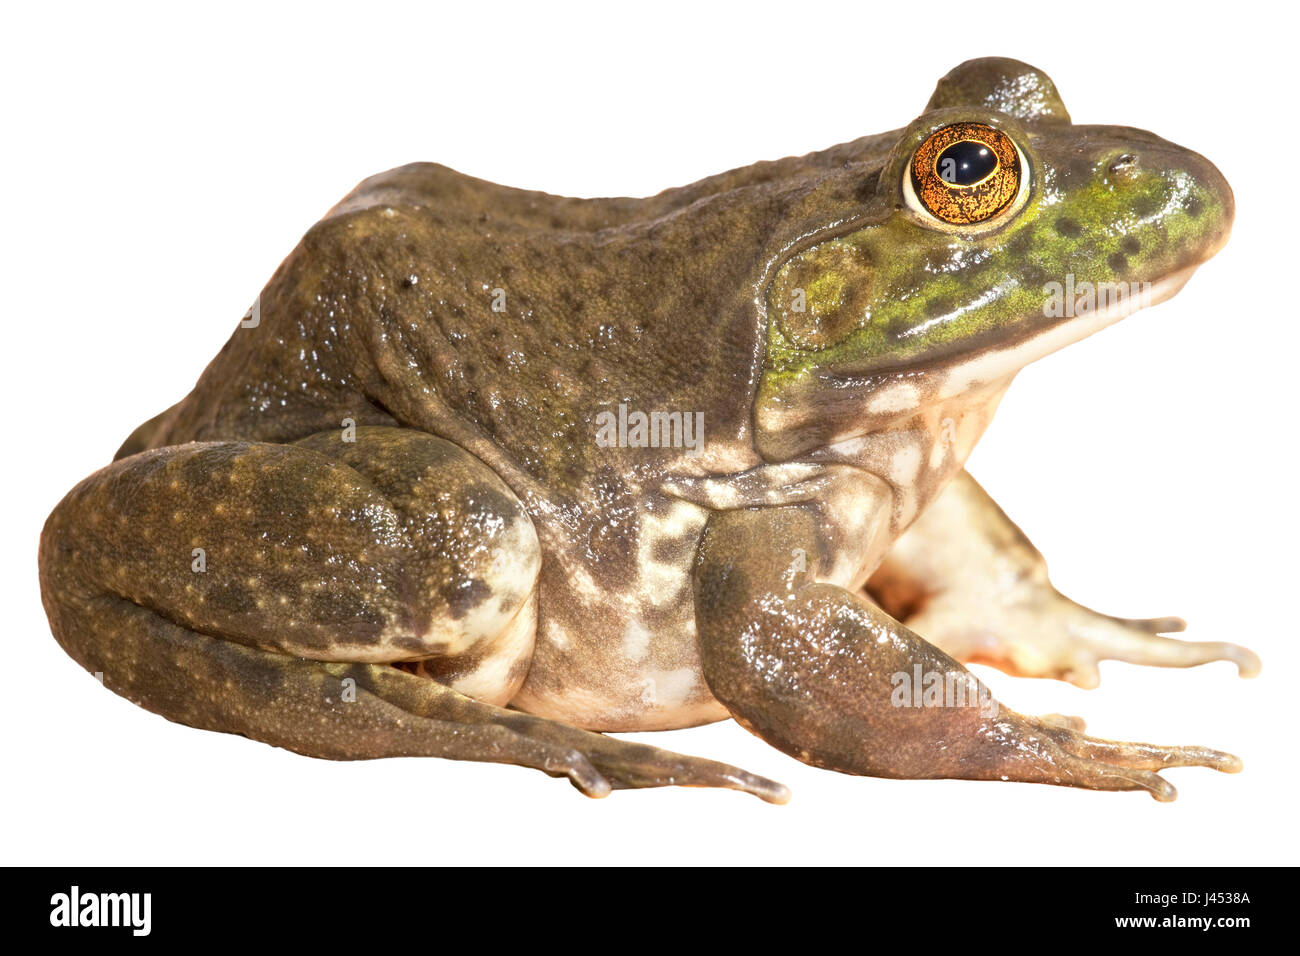 Nord America bullfrog contro uno sfondo bianco (resa) Foto Stock